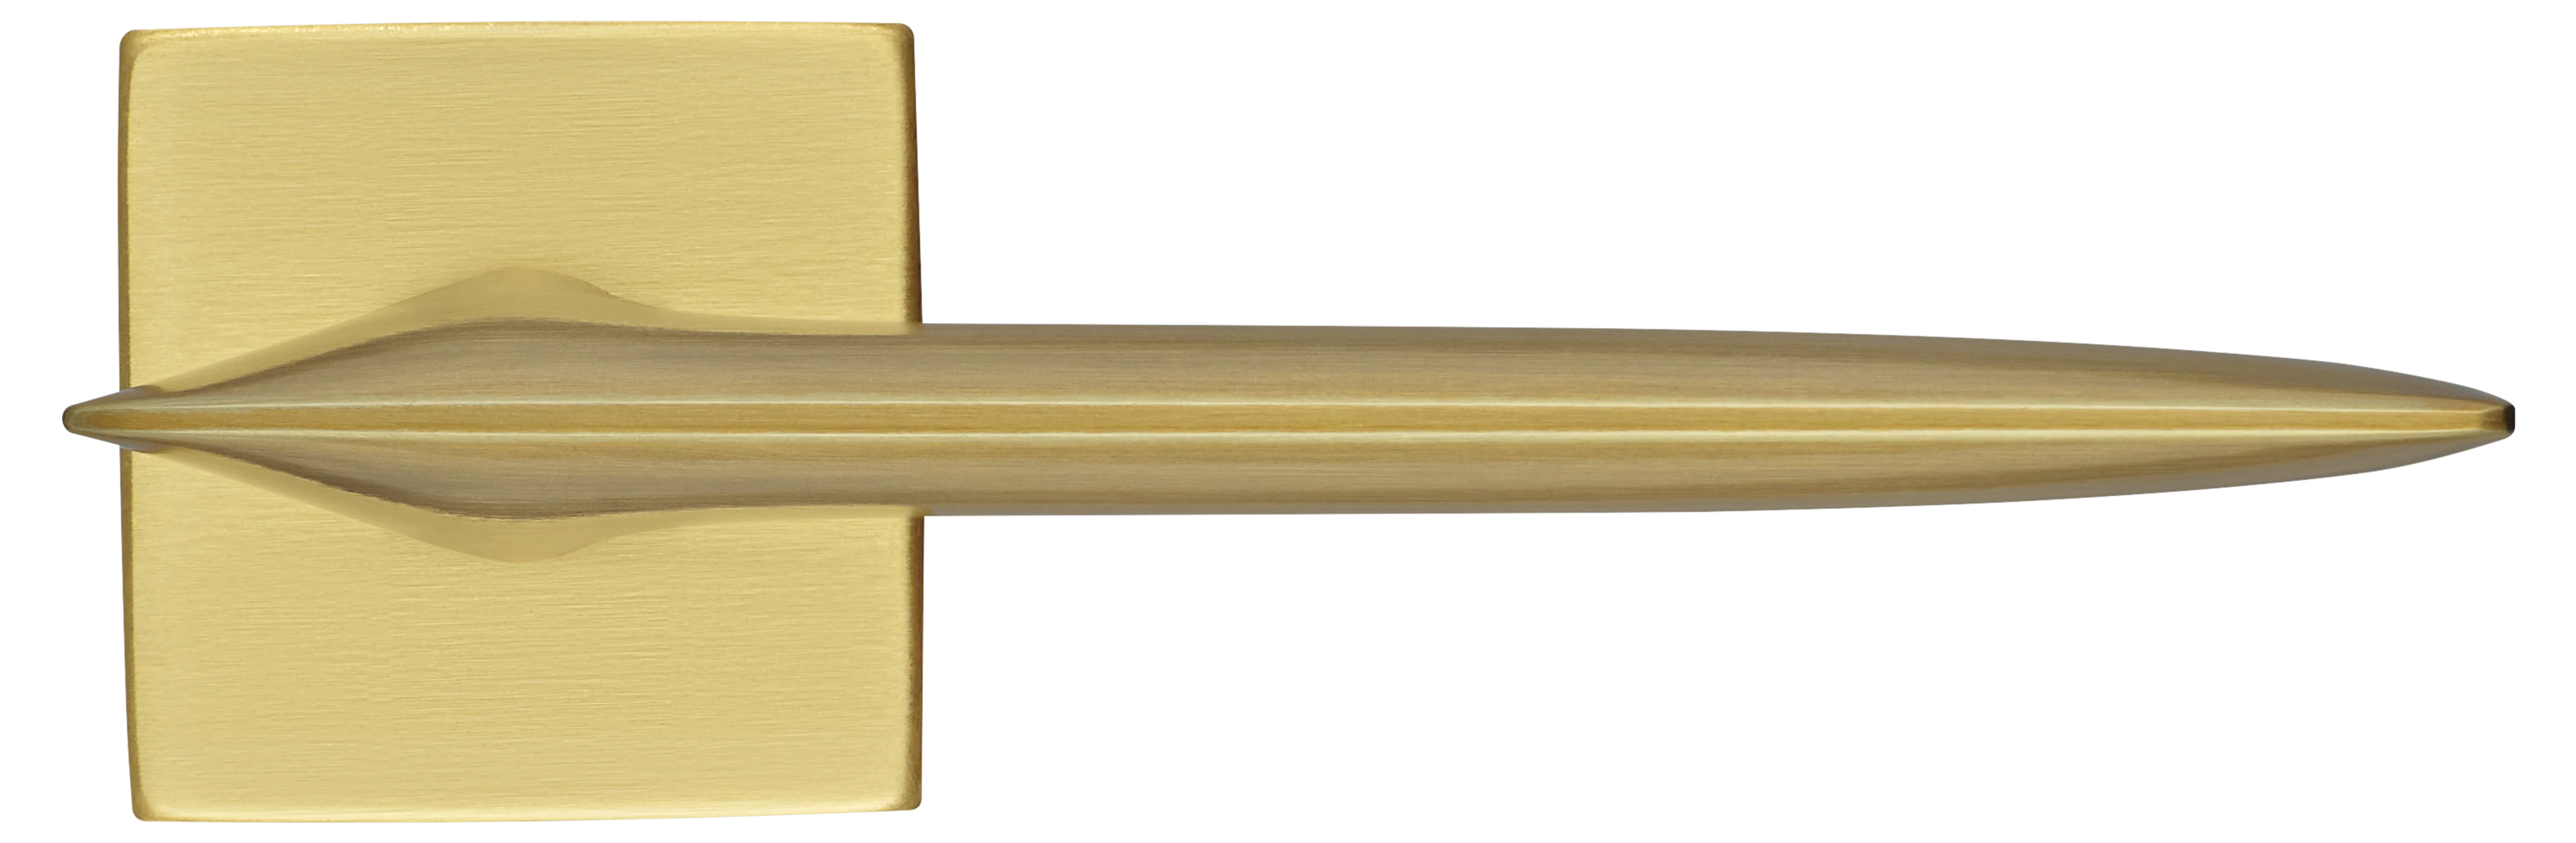 GALACTIC S5 OSA, ручка дверная, цвет -  матовое золото фото купить в Москве